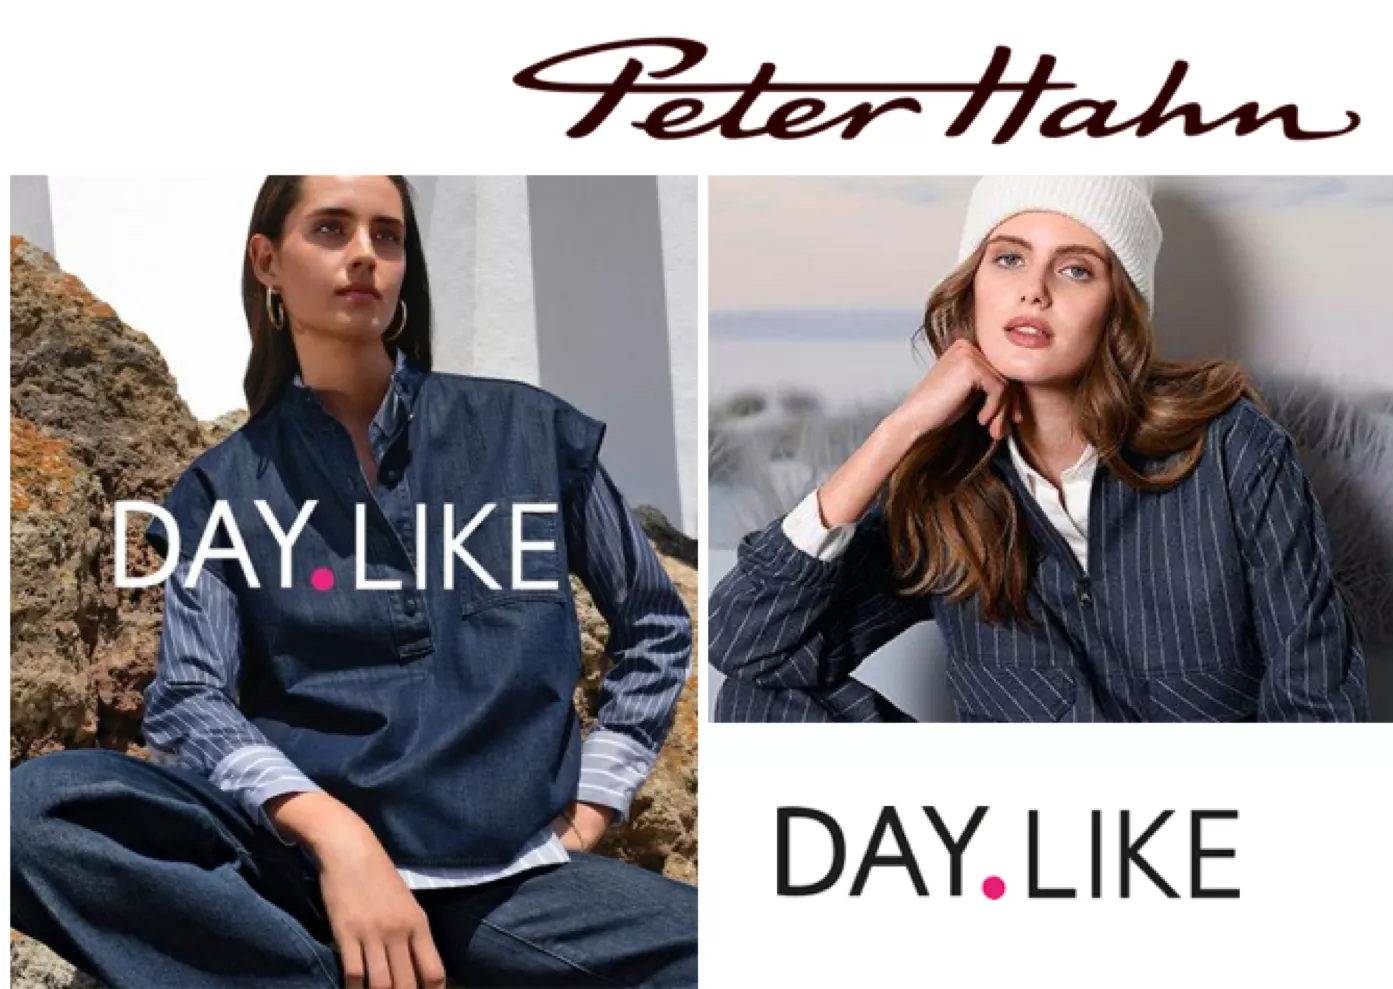 Ein Werbebild der Peter Hahn Eigenmarke DAY.LIKE auf dem zwei weibliche Models die Basic-Mode präsentieren. 